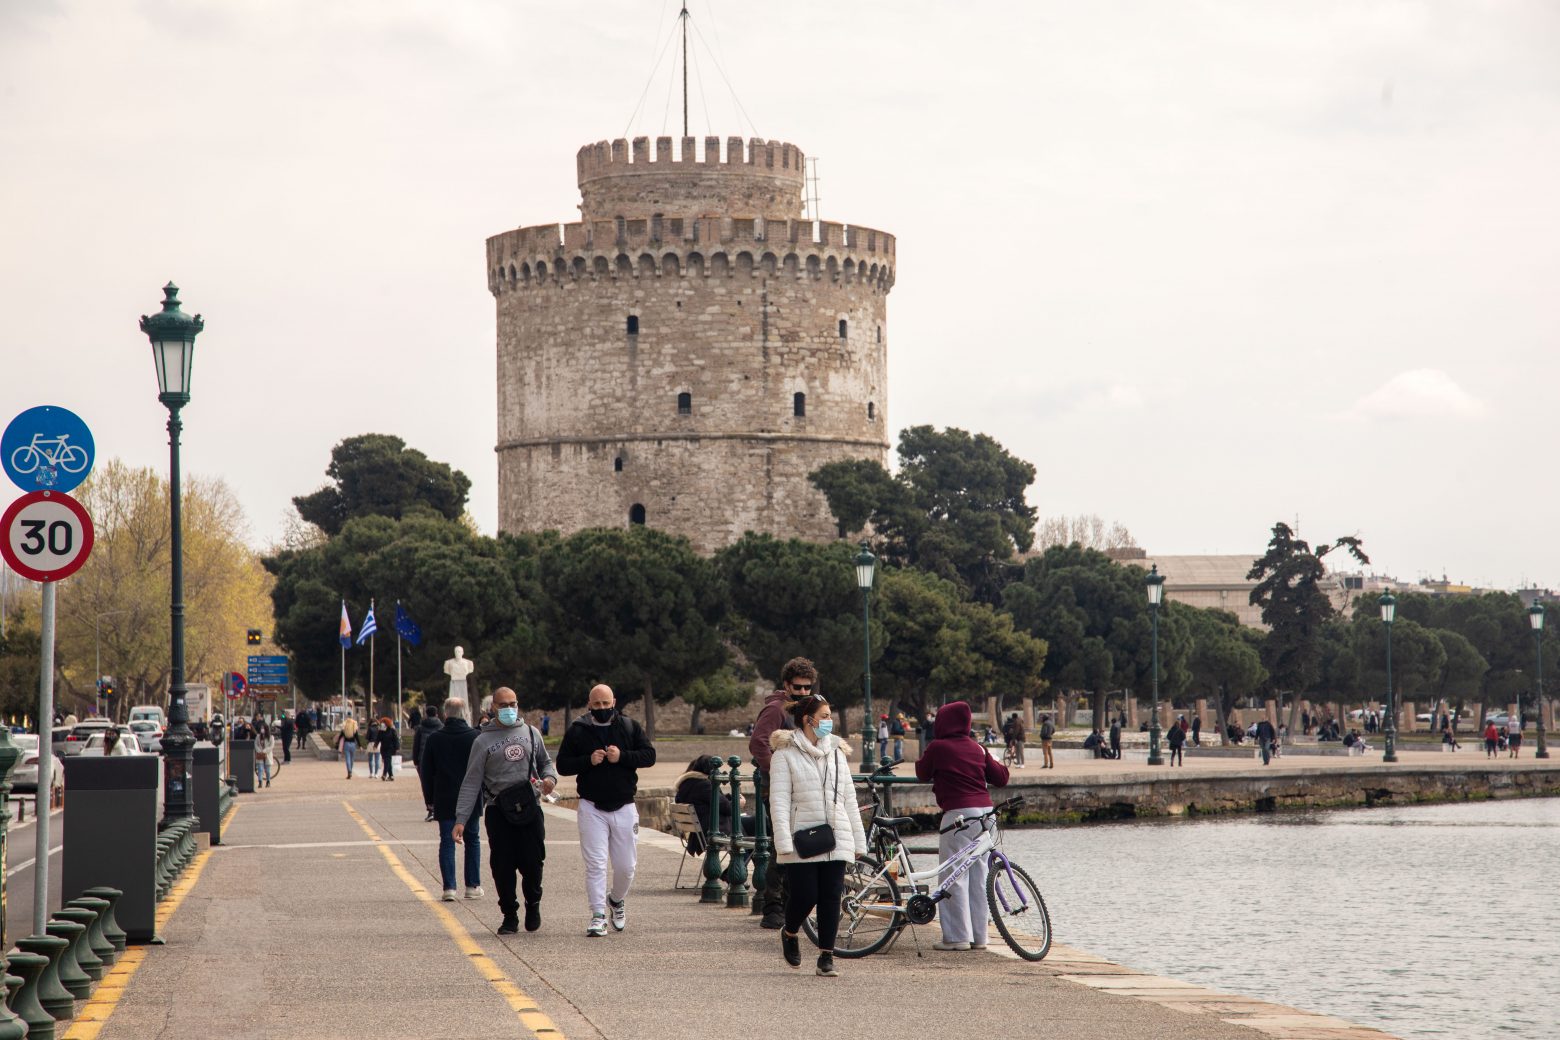 Λιανεμπόριο : Ικανοποίηση από τον δήμαρχο Θεσσαλονίκης - Έκκληση στους Θεσσαλονικείς να τηρούν τα μέτρα